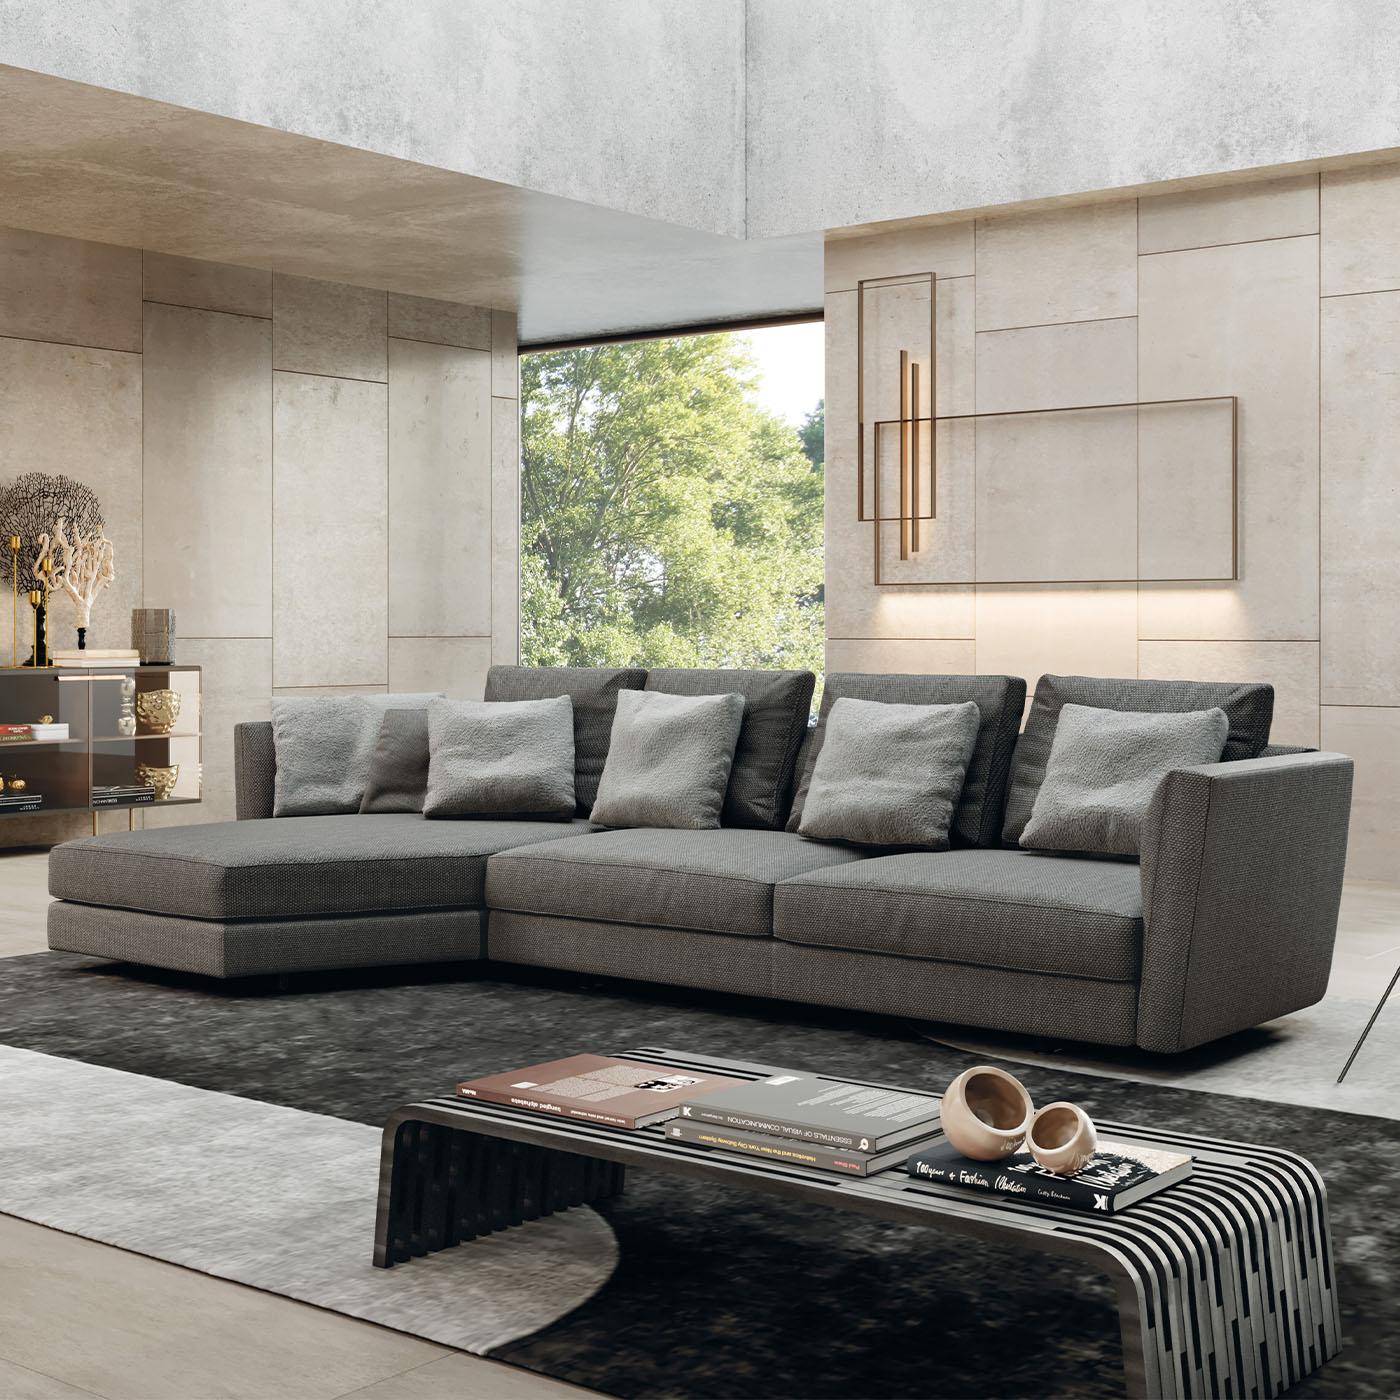 Dieses von Norberto Delfinetti entworfene Sofa ist mit einem stabilen Holzrahmen und einer hochdichten Schaumstoffpolsterung ausgestattet, die für Langlebigkeit und Entspannung sorgen. Die Sitzkissen sind mit Polyurethan umhüllt und bieten Komfort,